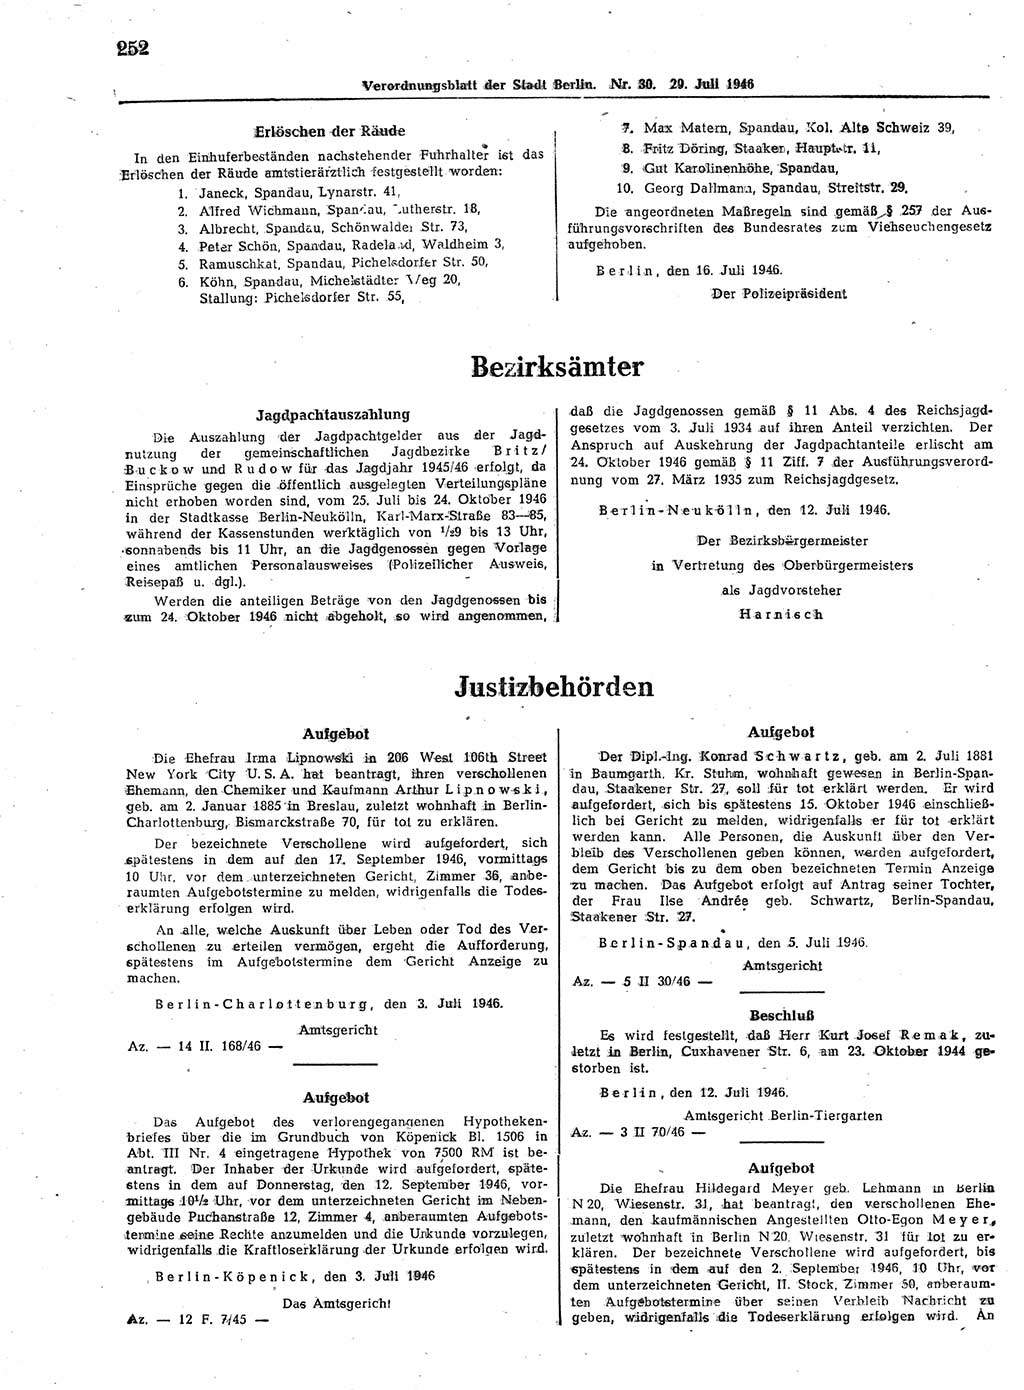 Verordnungsblatt (VOBl.) der Stadt Berlin, für Groß-Berlin 1946, Seite 252 (VOBl. Bln. 1946, S. 252)